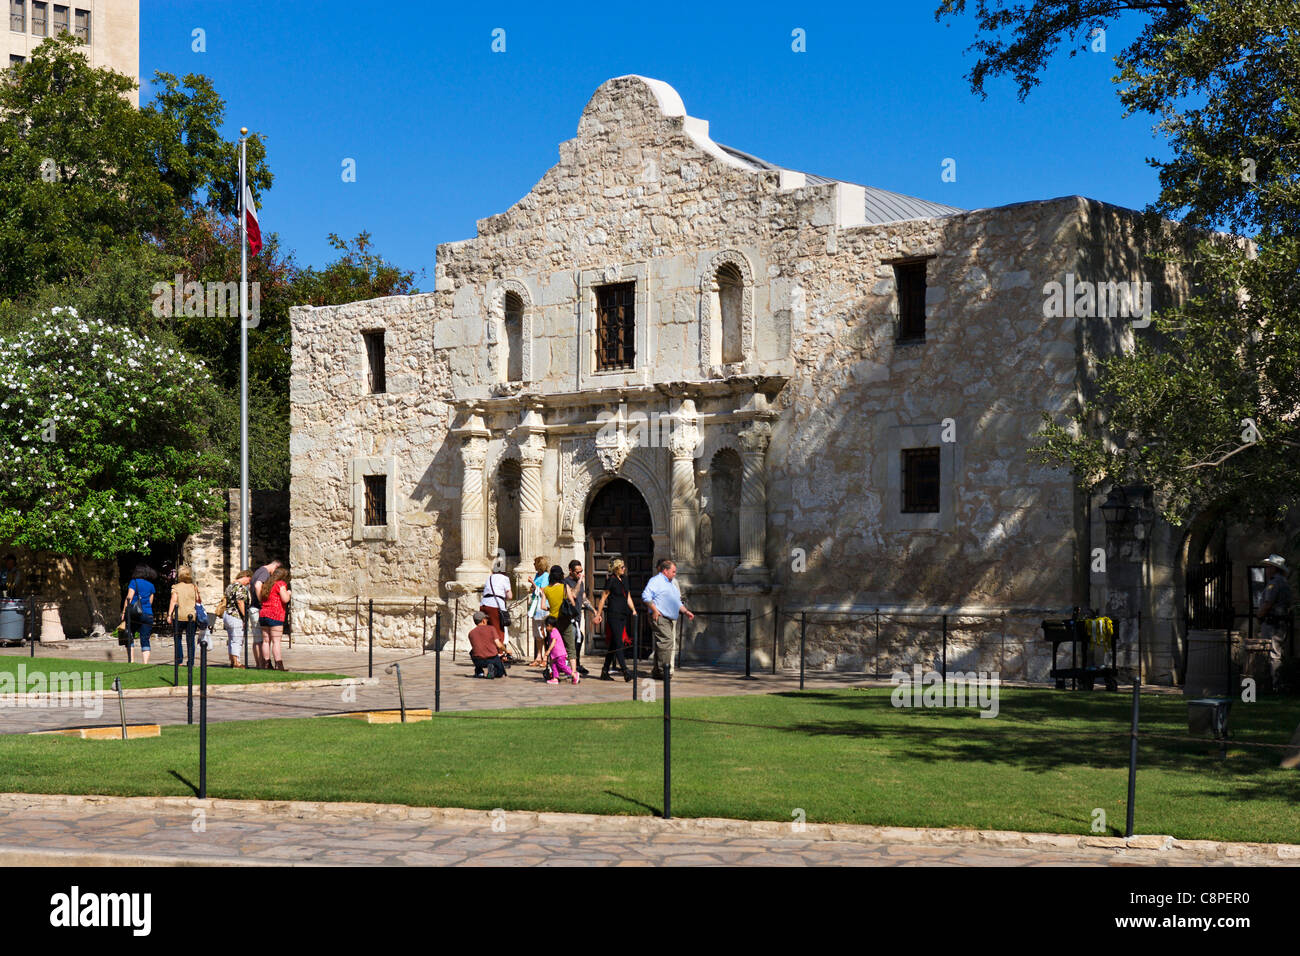 Die Alamo. Touristen vor der Alamo Mission, Ort der berühmten Schlacht, San Antonio, Texas, USA Stockfoto